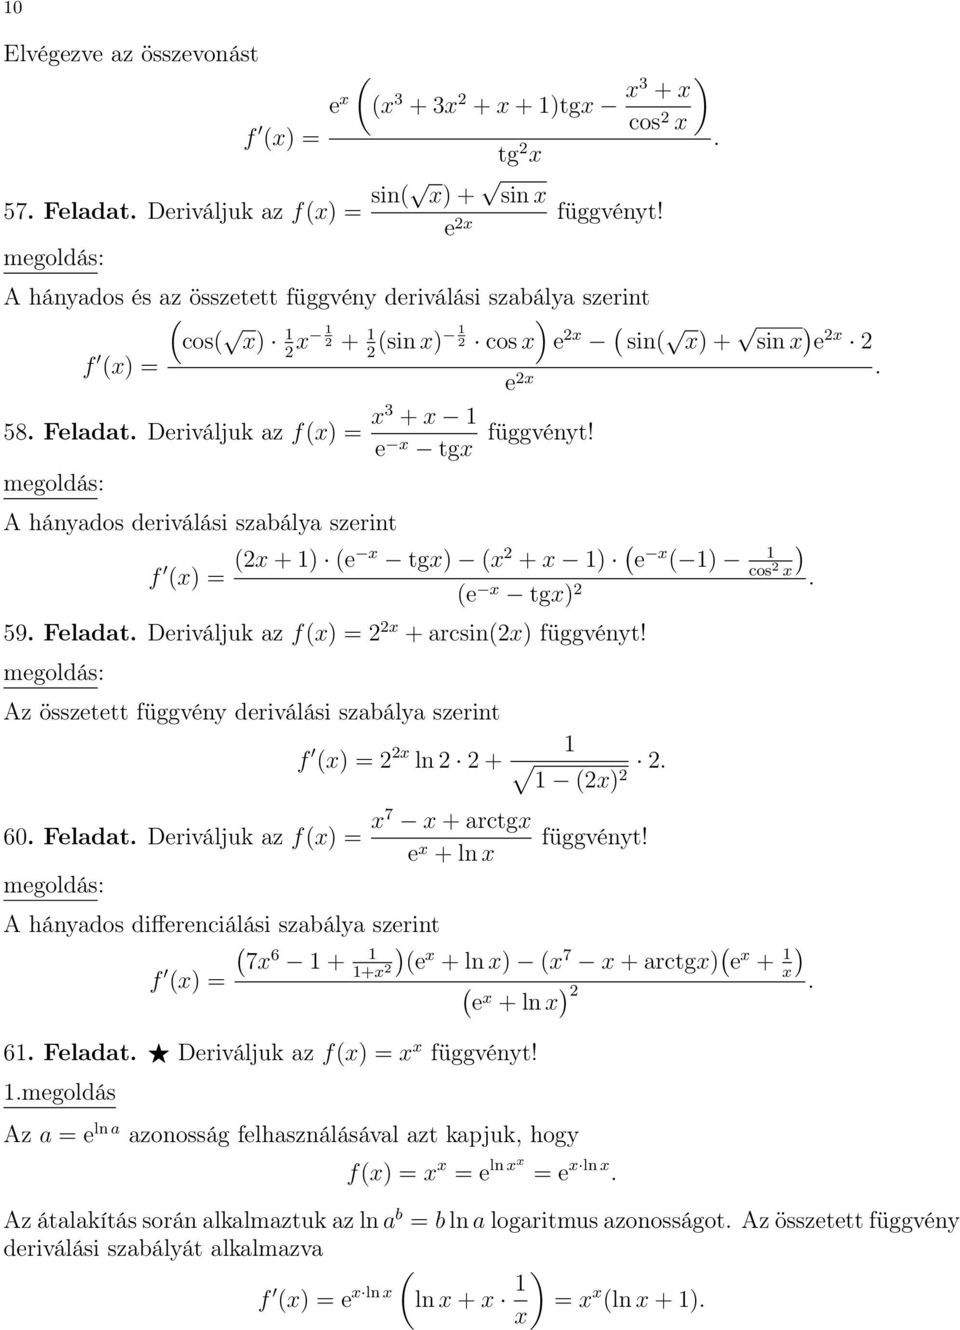 összetett függvény deriválási szabálya szerint f = 2 2 ln 2 2 + 2 2 2 60 Feladat Deriváljuk az f = 7 + arctg e + ln A hányados differenciálási szabálya szerint 7 6 + f + e + ln 7 + arctg